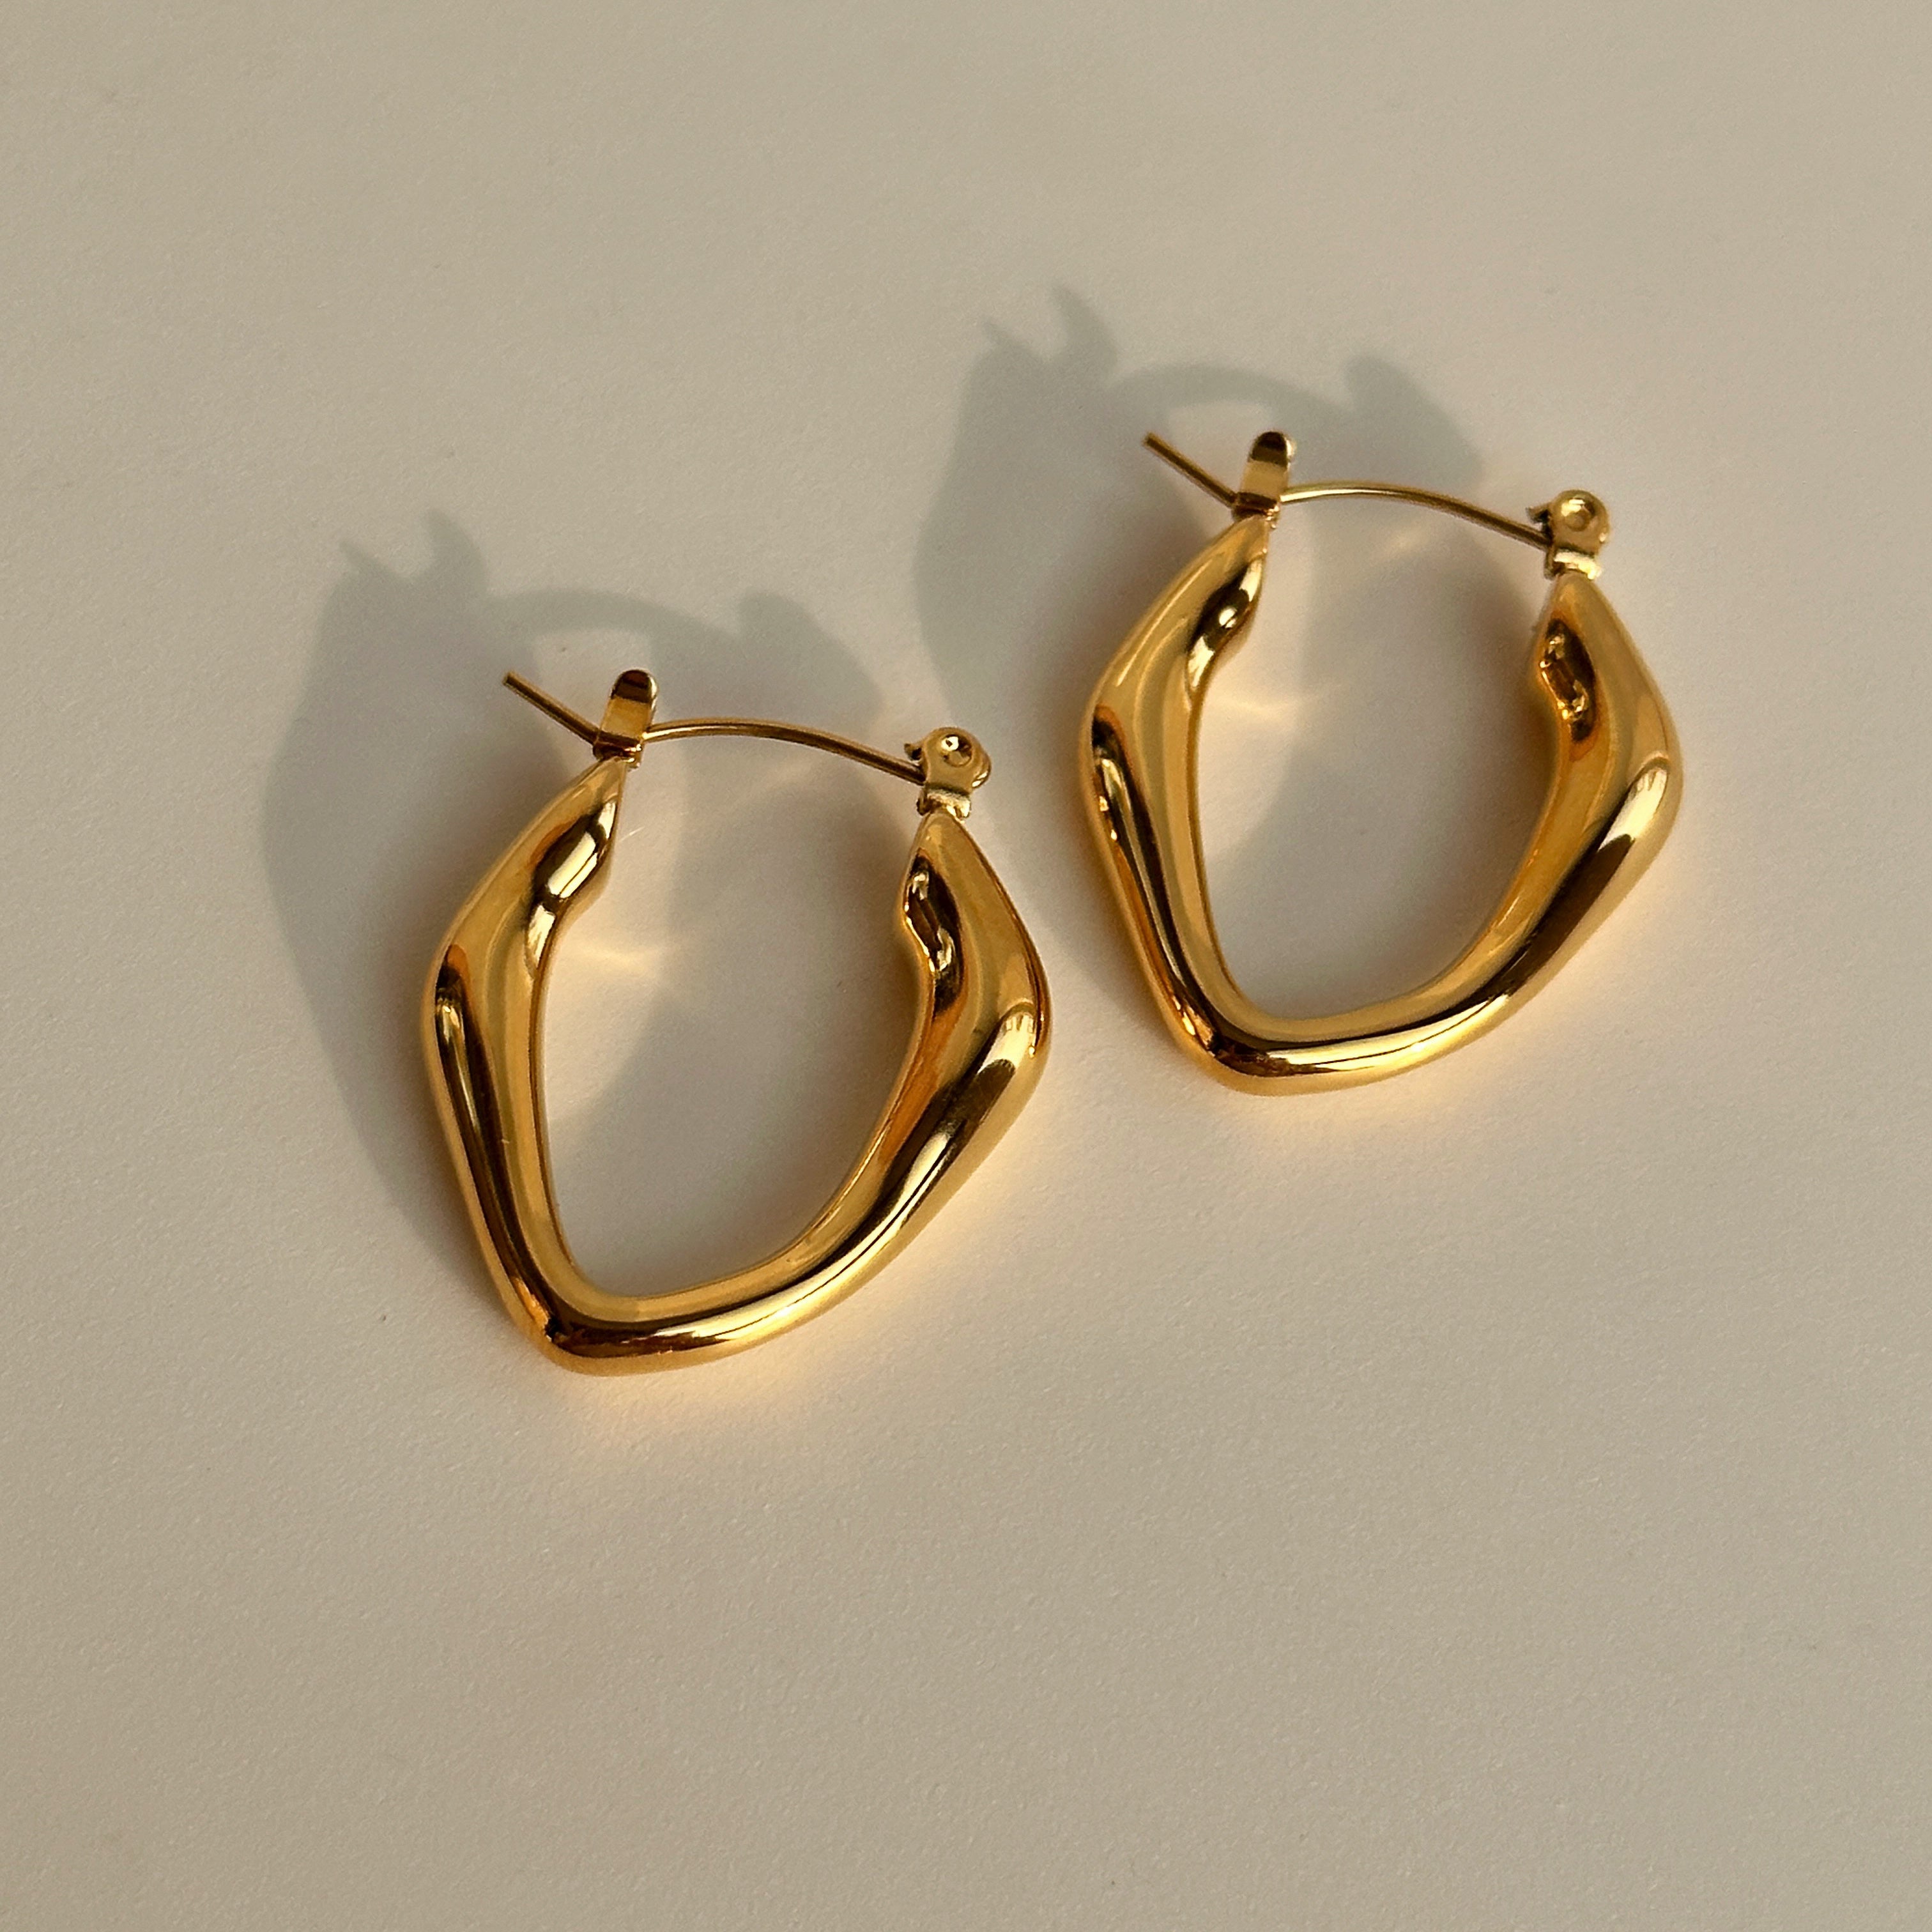 Celine Earrings - 18k Gold Plated